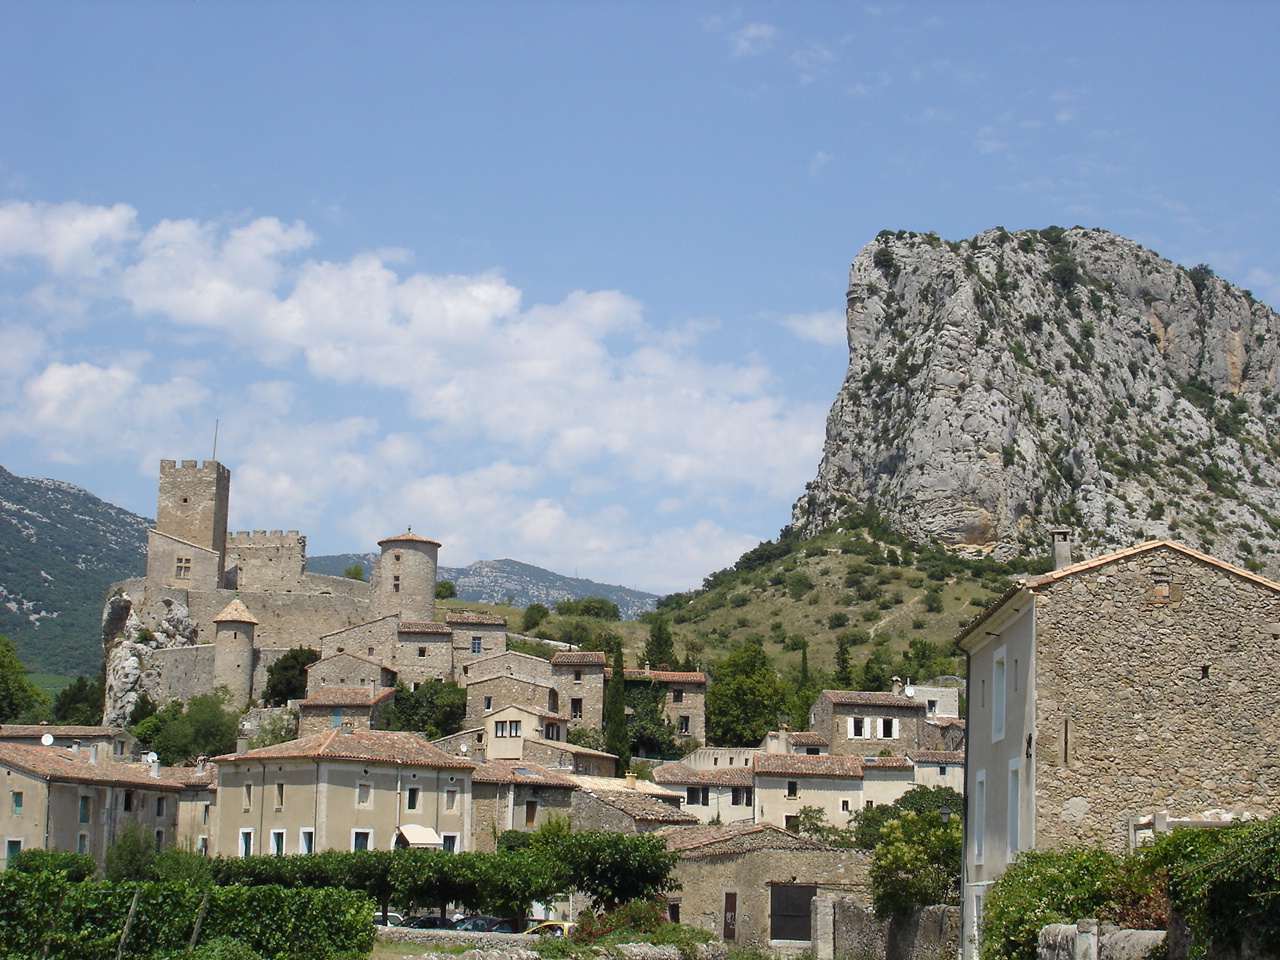 Saint-Jean-de-Buèges - Wikipedia